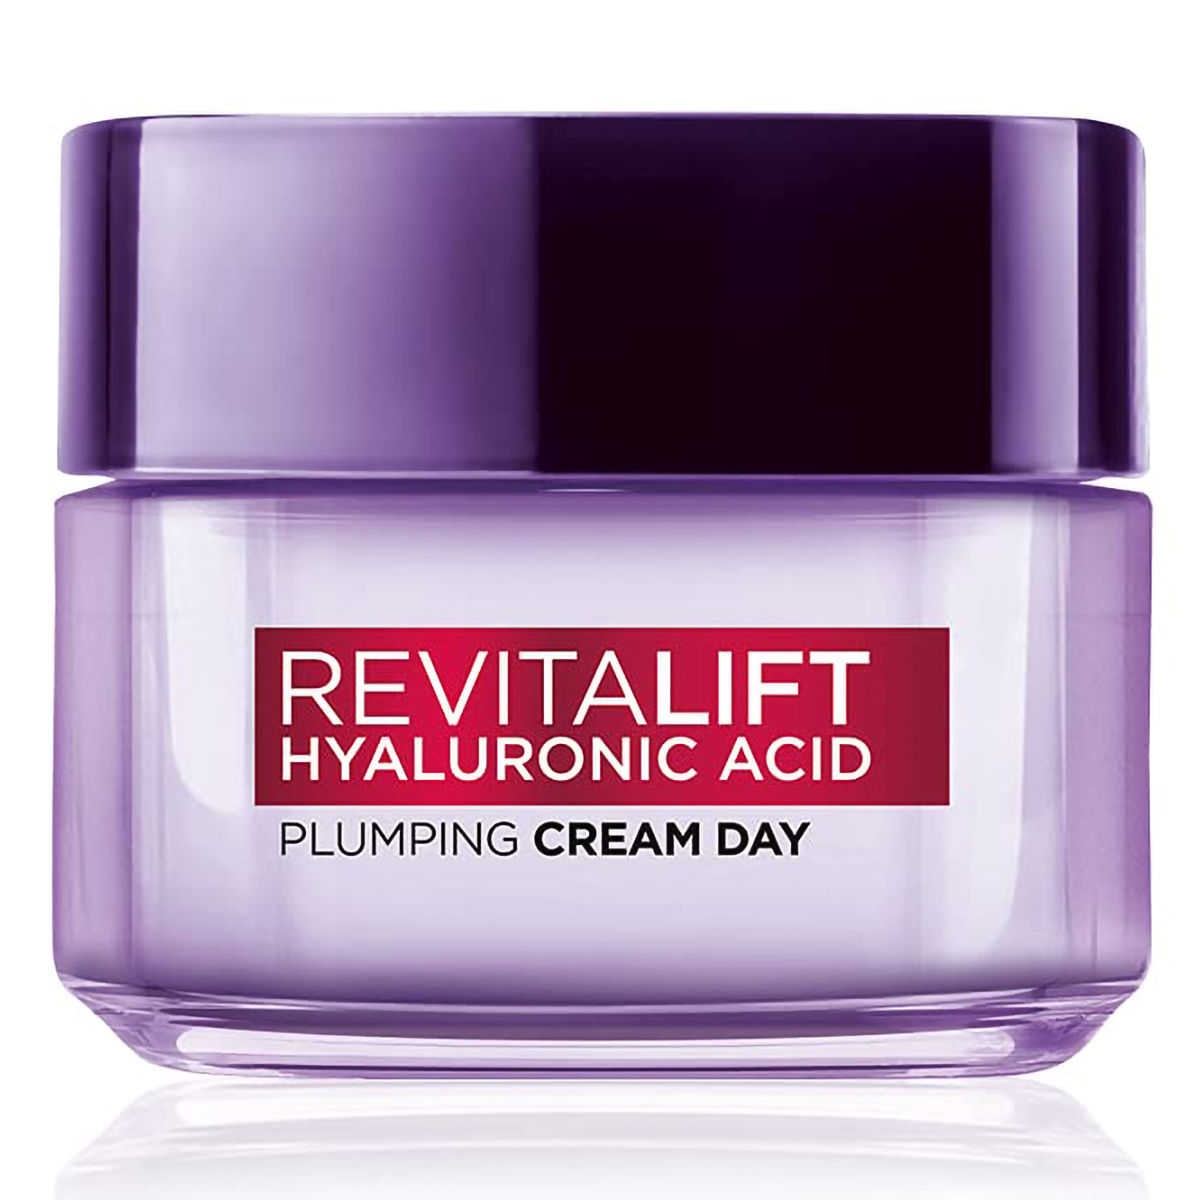 Buy L'Oreal Paris Revitalift Hyaluronic Acid Day Cream, 15 ml Online